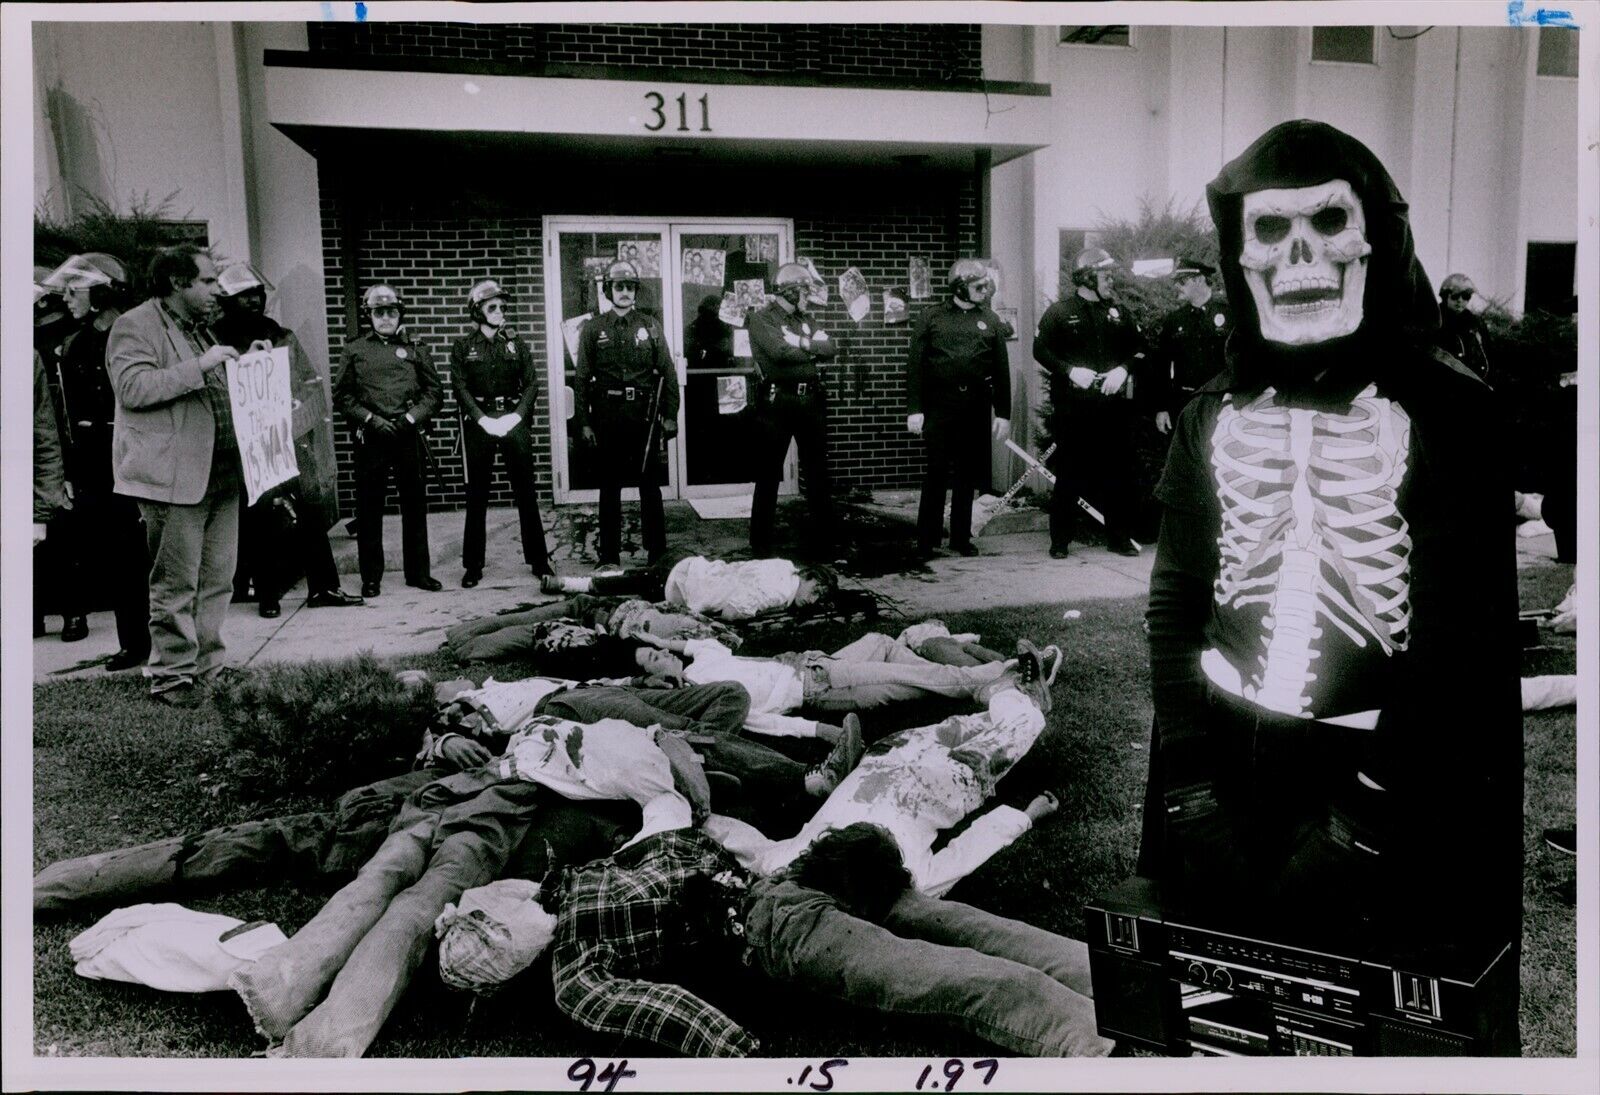 LG874 1987 Orig Dave Buresh Photo ANTI CONFRA ACTIVISTS Skeleton Demonstration